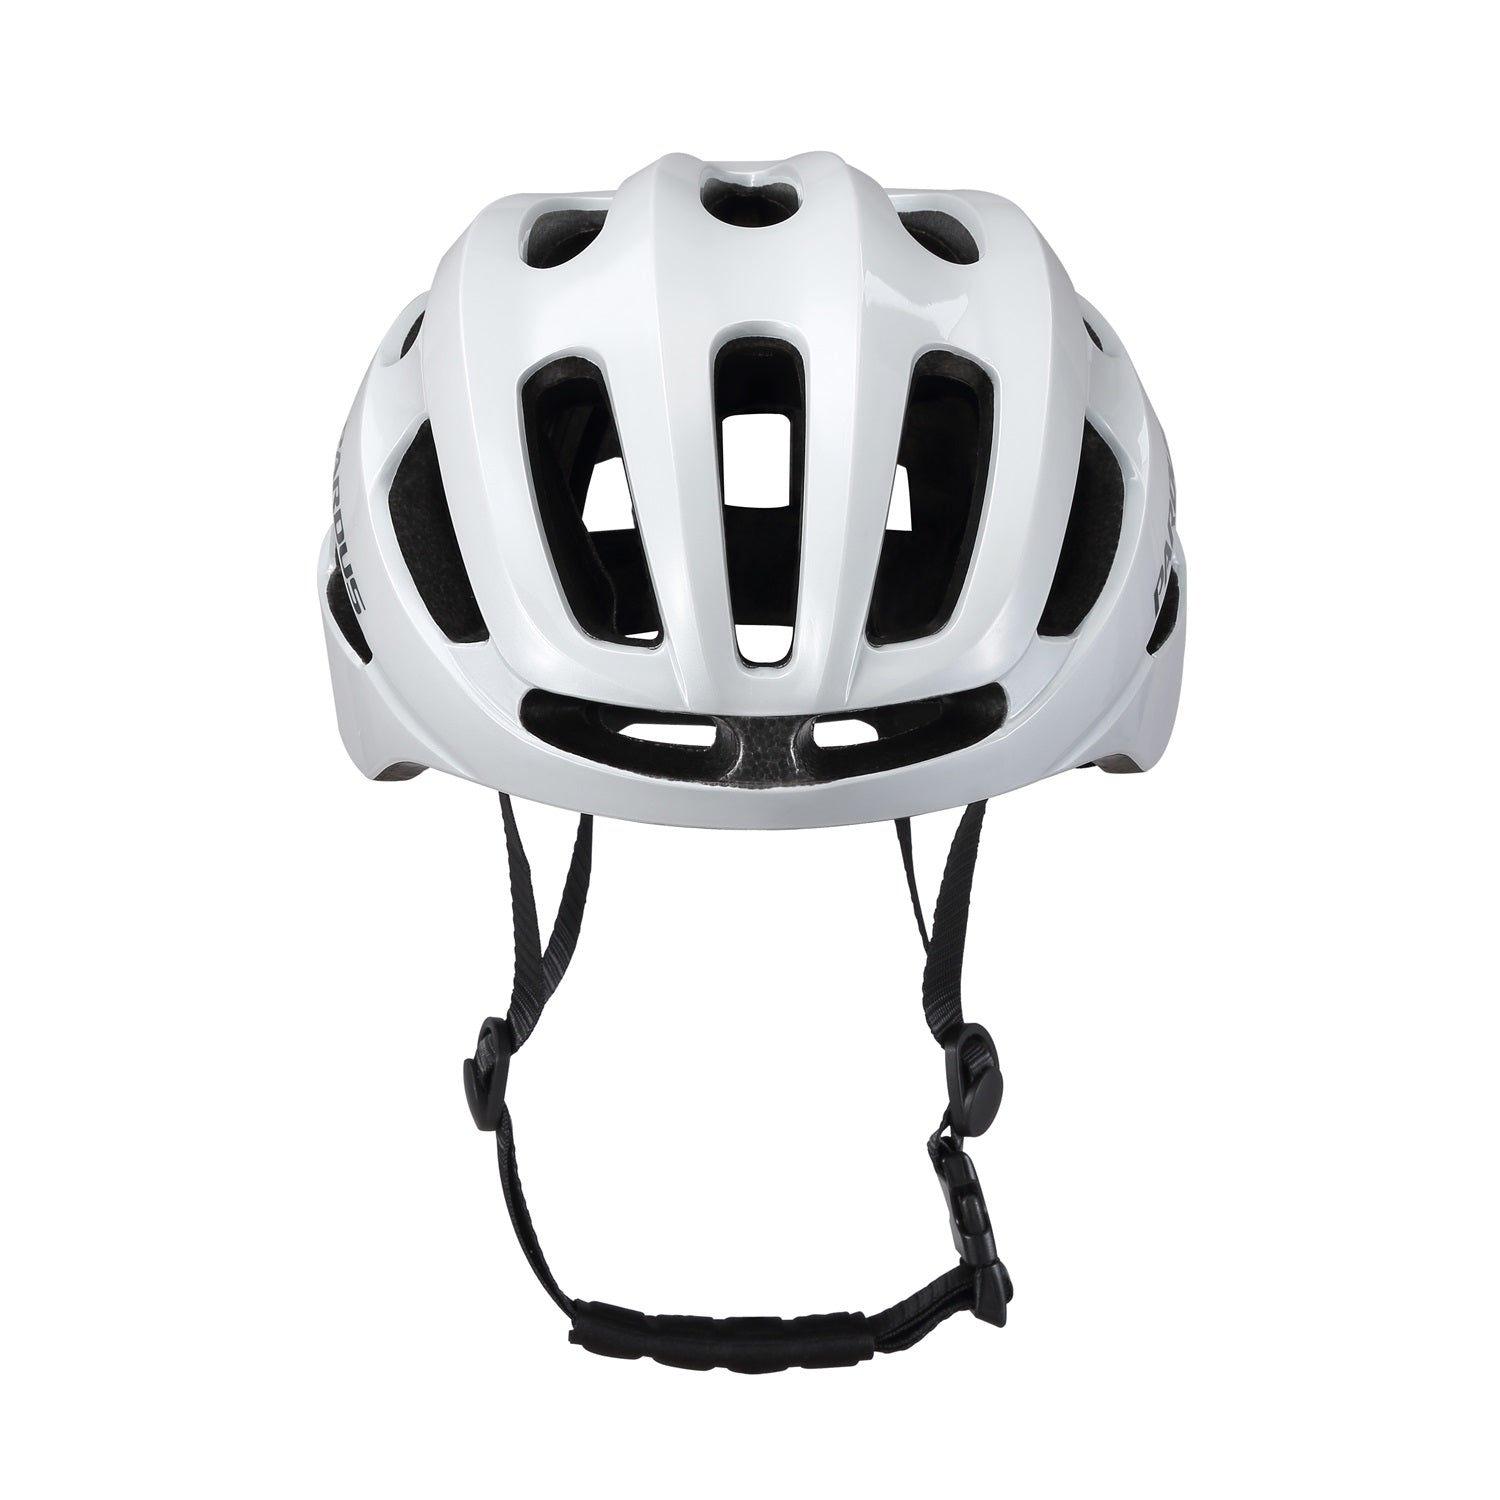 Pardus Lino Bicycle Helmet